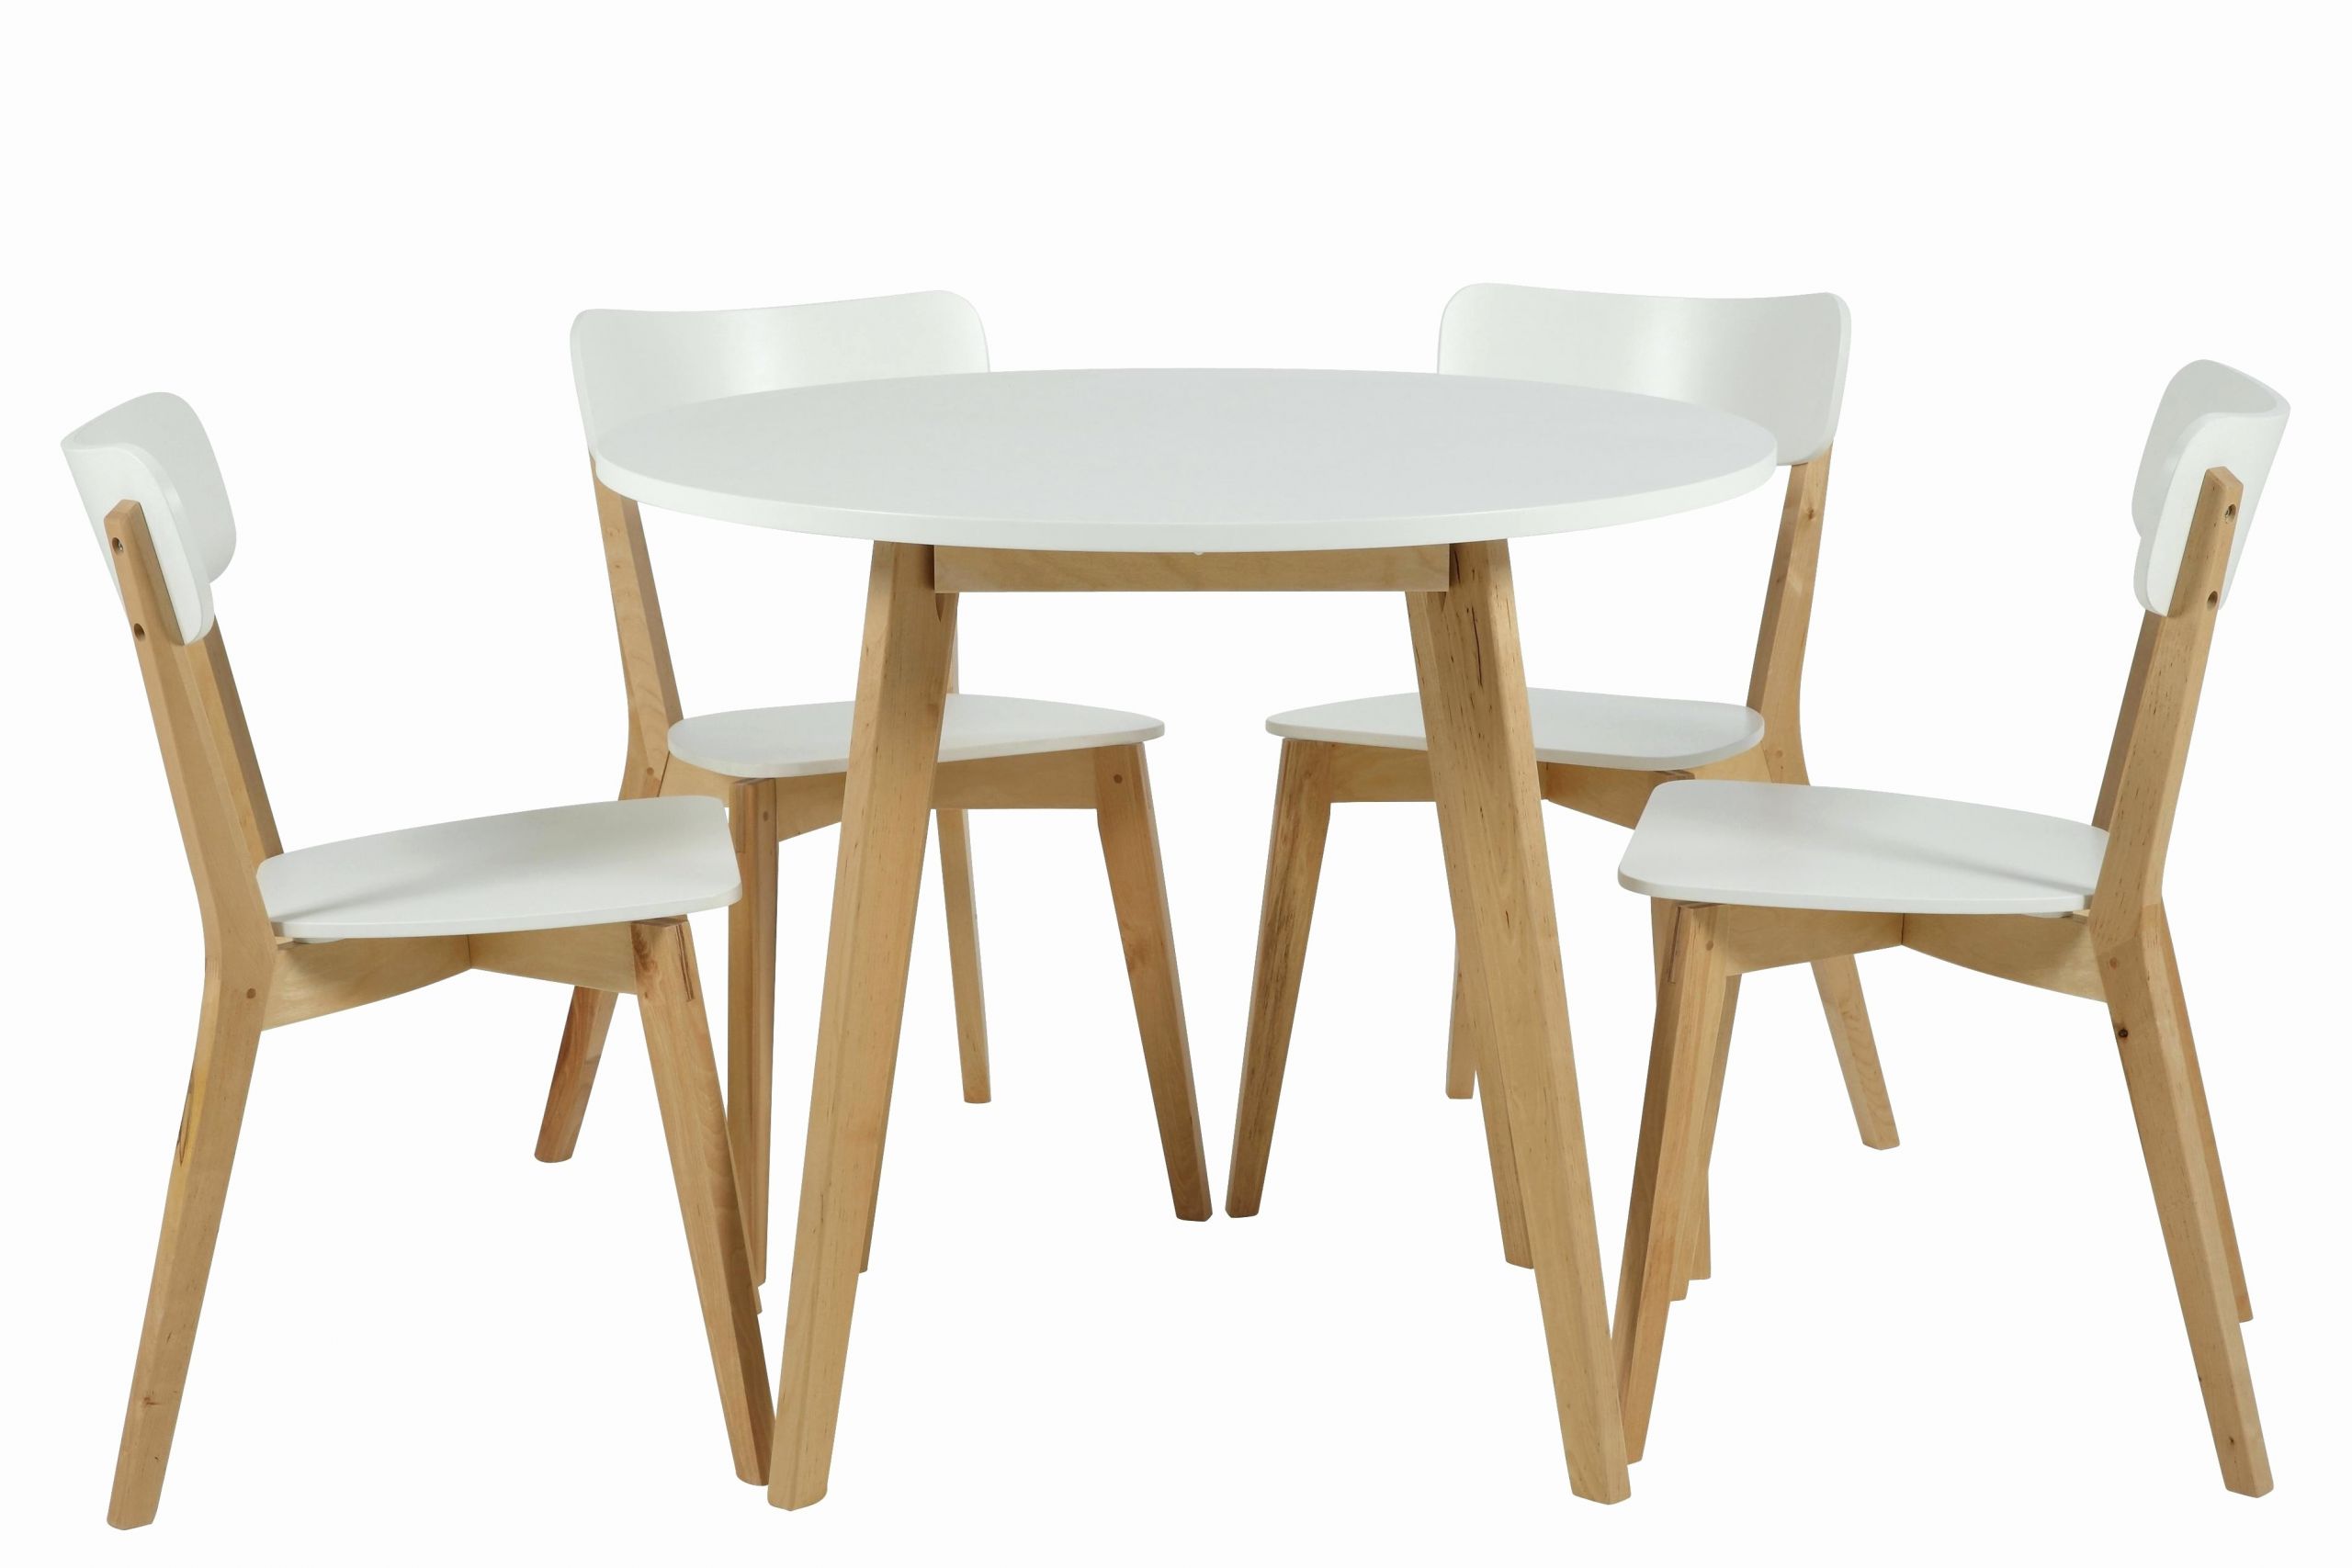 beau alinea chaise cuisine new table et chaises de dans beau alinea chaise cuisine new table et chaises de high resolution avec of